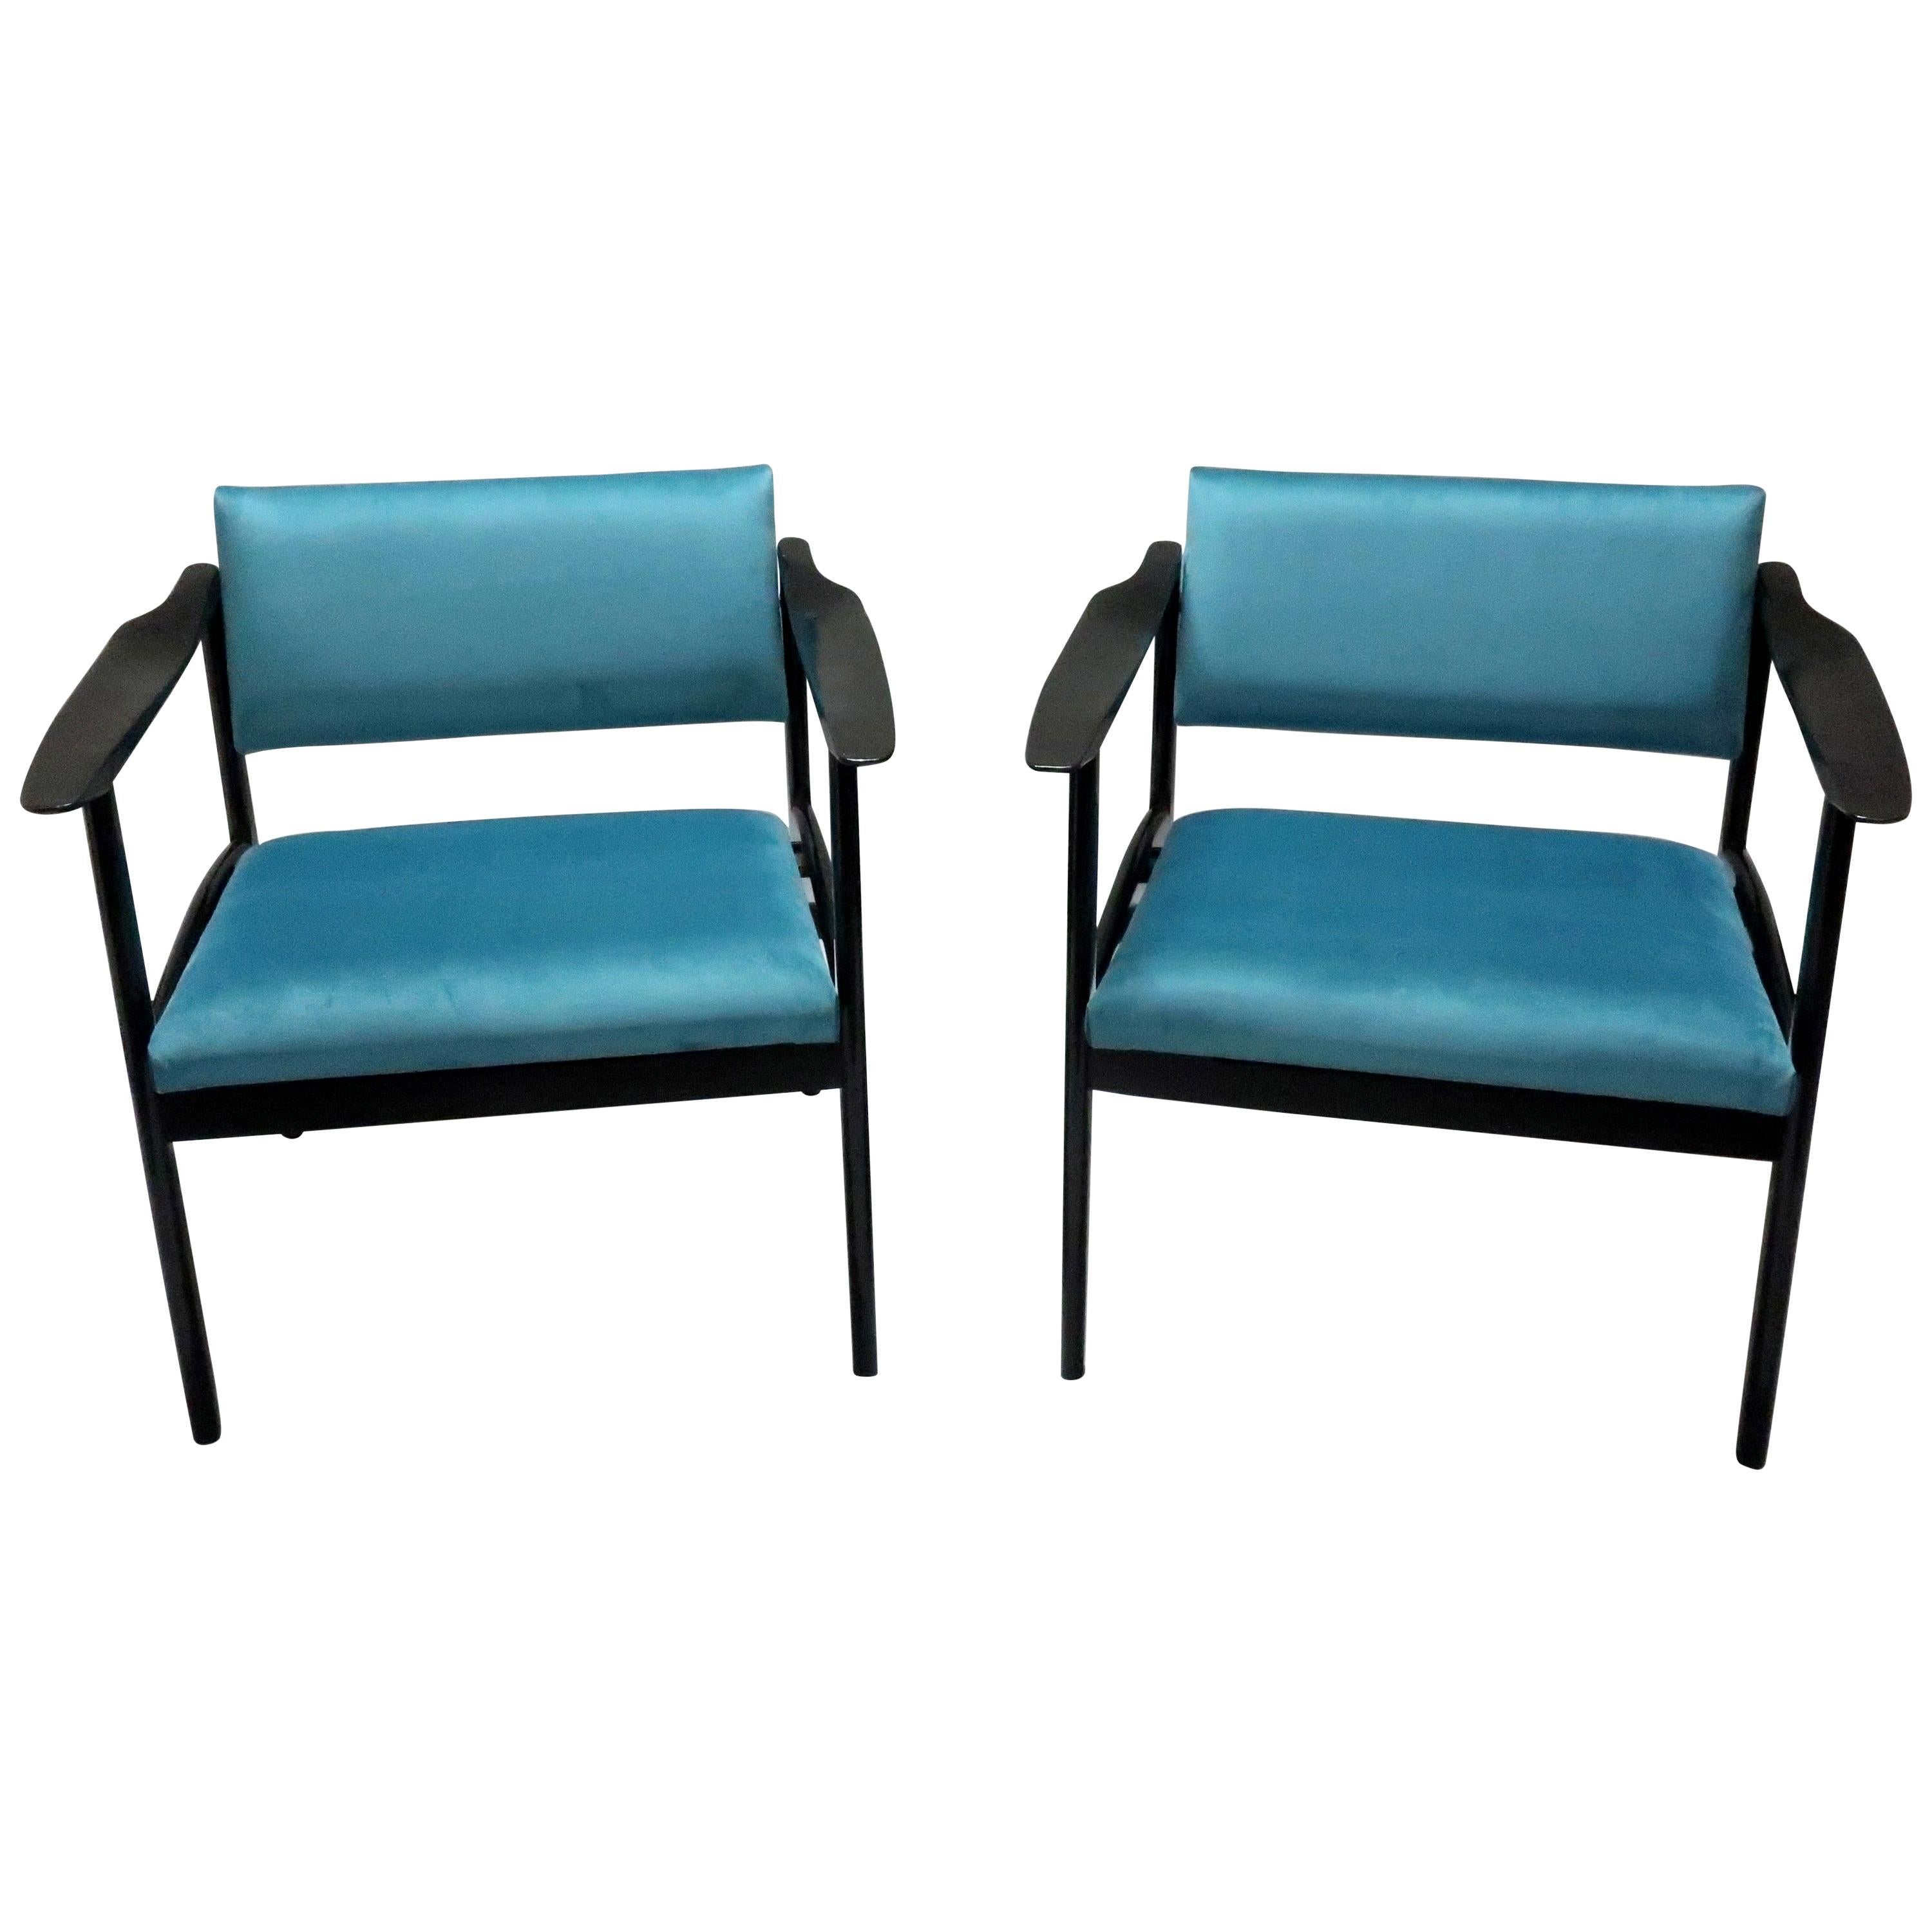 Pair of Italian Midcentury Ebonized Armchairs Upholstered in Teal Velvet For Sale